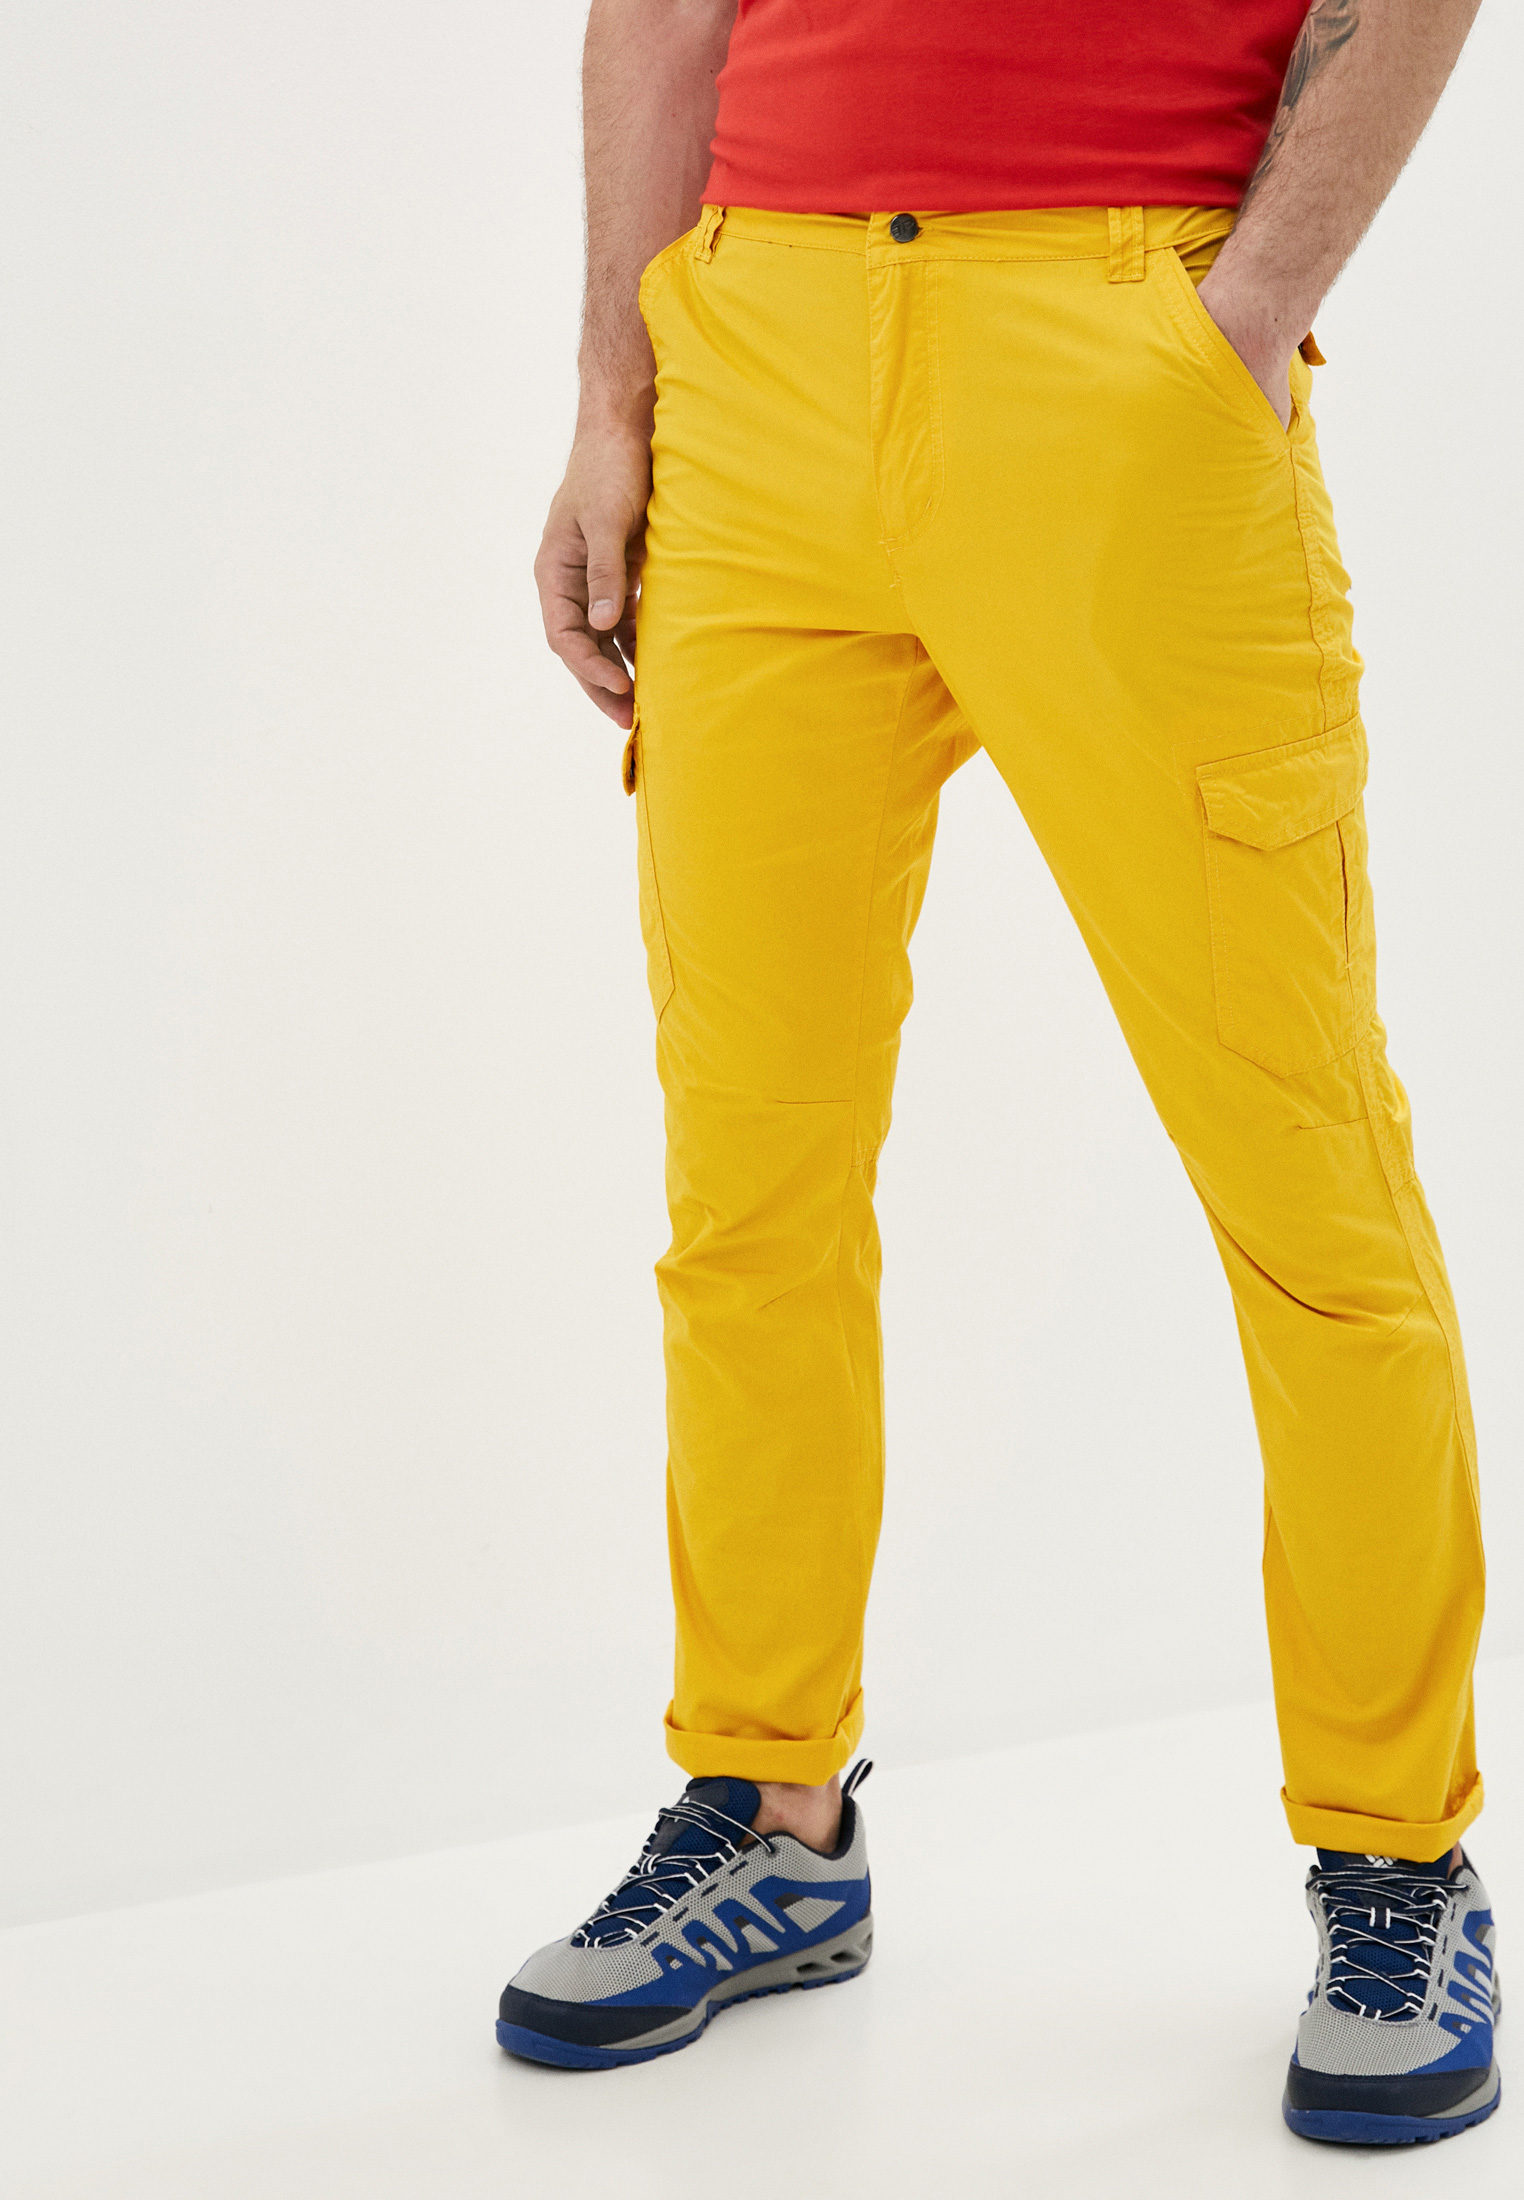 Желтые штаны мужские. Желтые брюки мужские. Жёлтые спортивные штаны мужские. Брюки спортивные мужские желтые. Мужские штаны желтые летние.